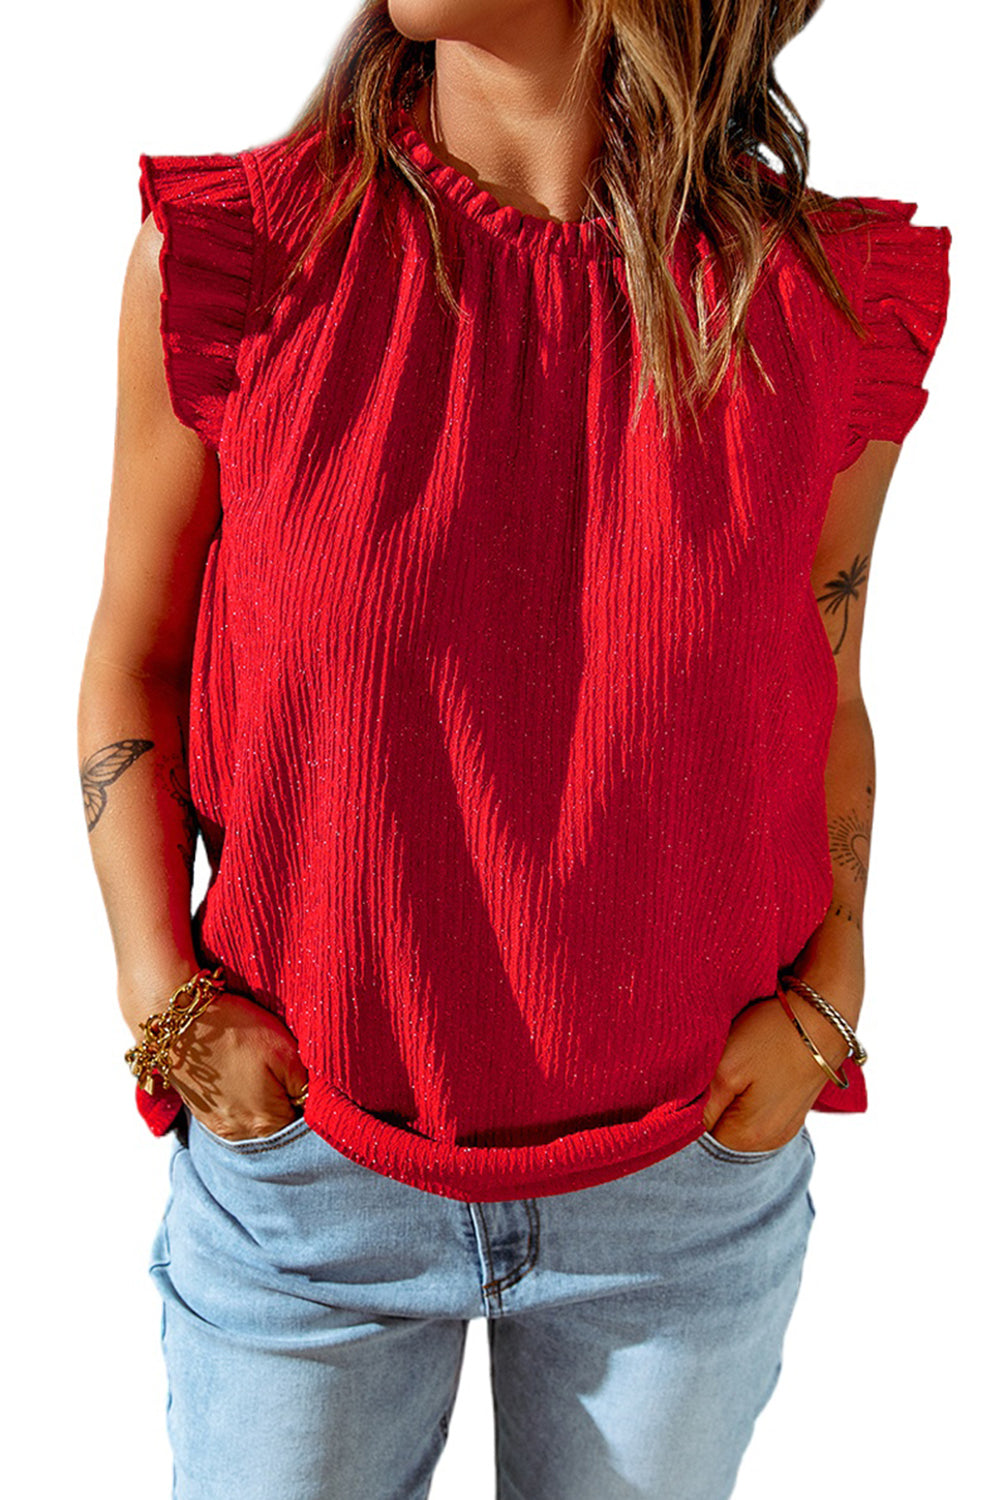 Ognjeno rdeča majica brez rokavov z naborki in O-izrezom